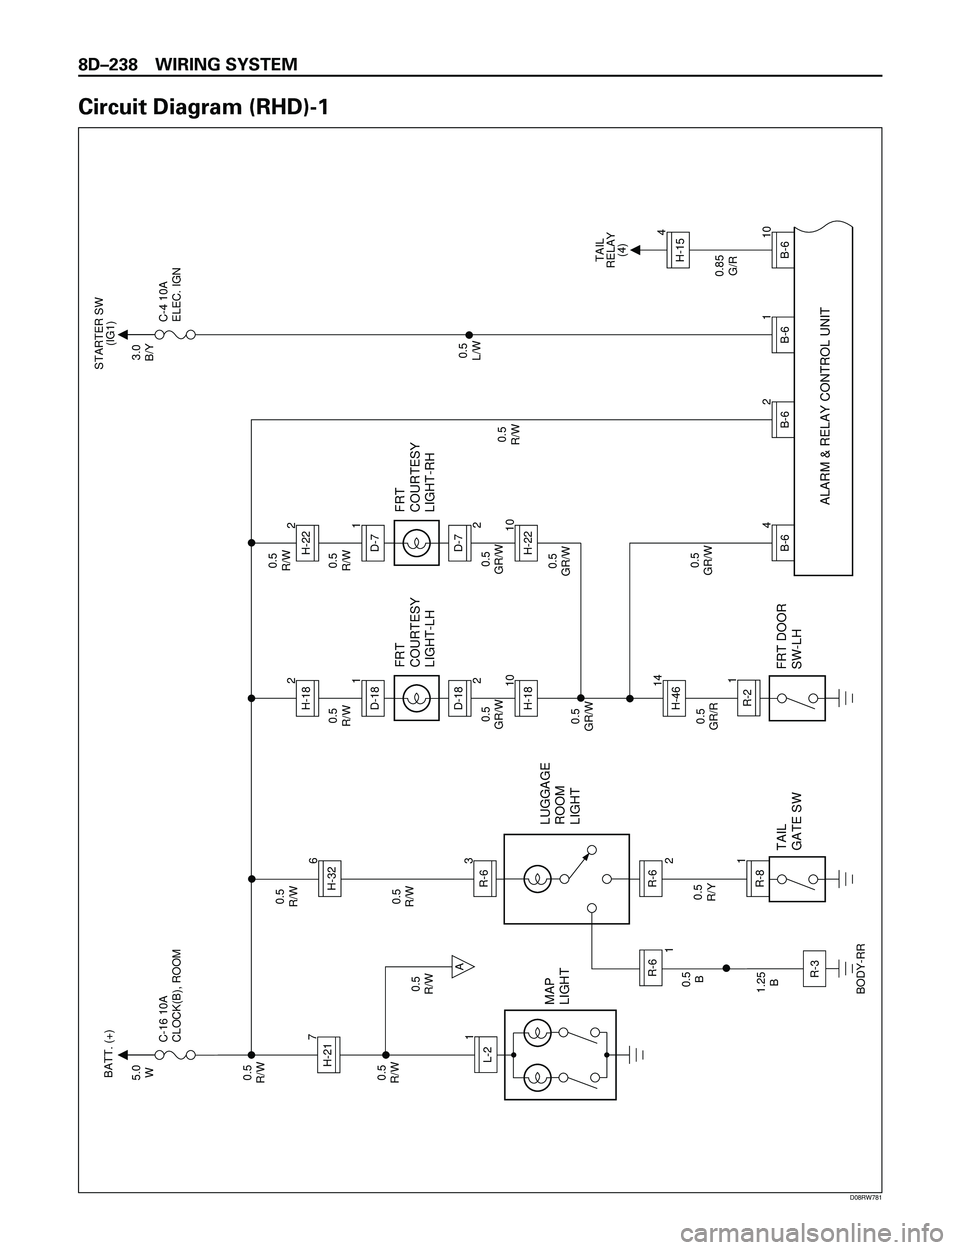 ISUZU TROOPER 1998  Service Repair Manual 8DÐ238 WIRING SYSTEM
Circuit Diagram (RHD)-1
TAIL
RELAY
(4)
MAP
LIGHT
5.0
W
0.5
R/W
0.5
R/W
0.5
R/W
0.5
R/W C-16 10A
CLOCK(B), ROOMBATT. (+)
STARTER SW
(IG1)
3.0
B/Y
C-4 10A
ELEC. IGN
0.5
R/Y
LUGGAGE